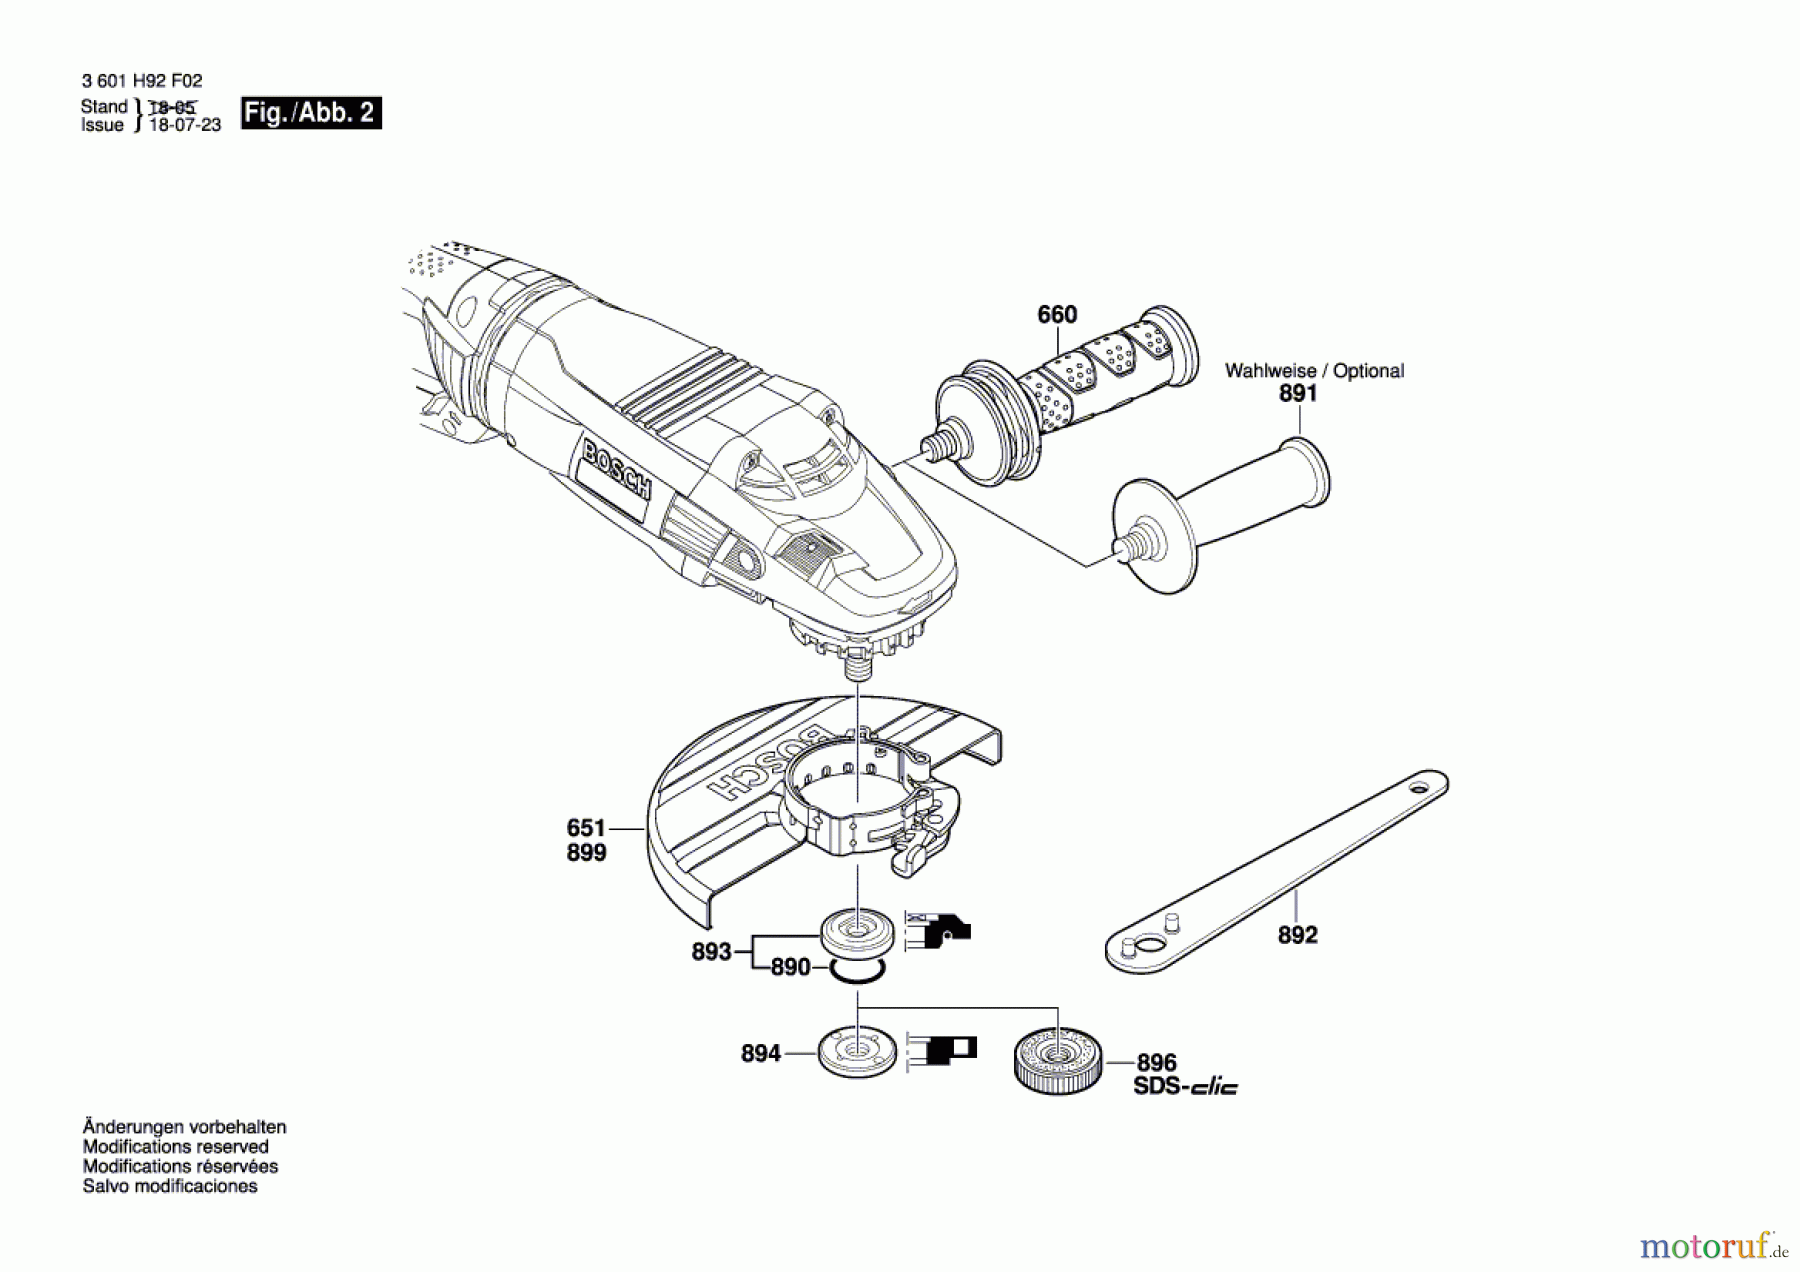  Bosch Werkzeug Winkelschleifer GWS 26-180 LVI Seite 2